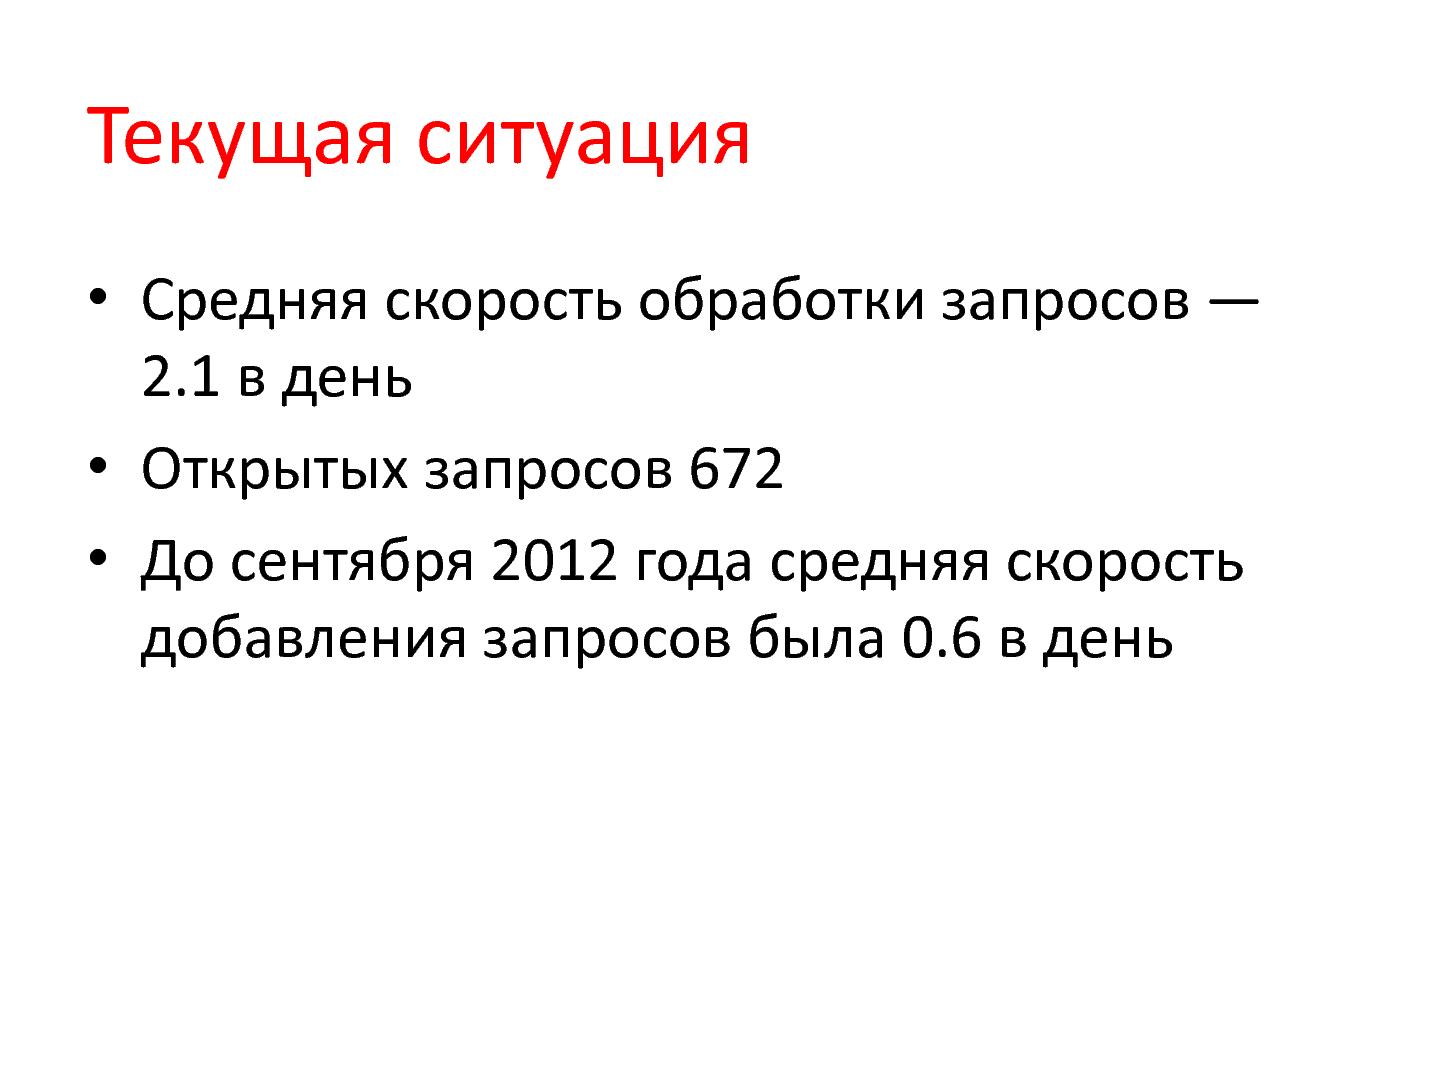 Файл:Опыт применения А3-анализа в компании Skype (Алексей Ильичев, AgileDays-2014).pdf